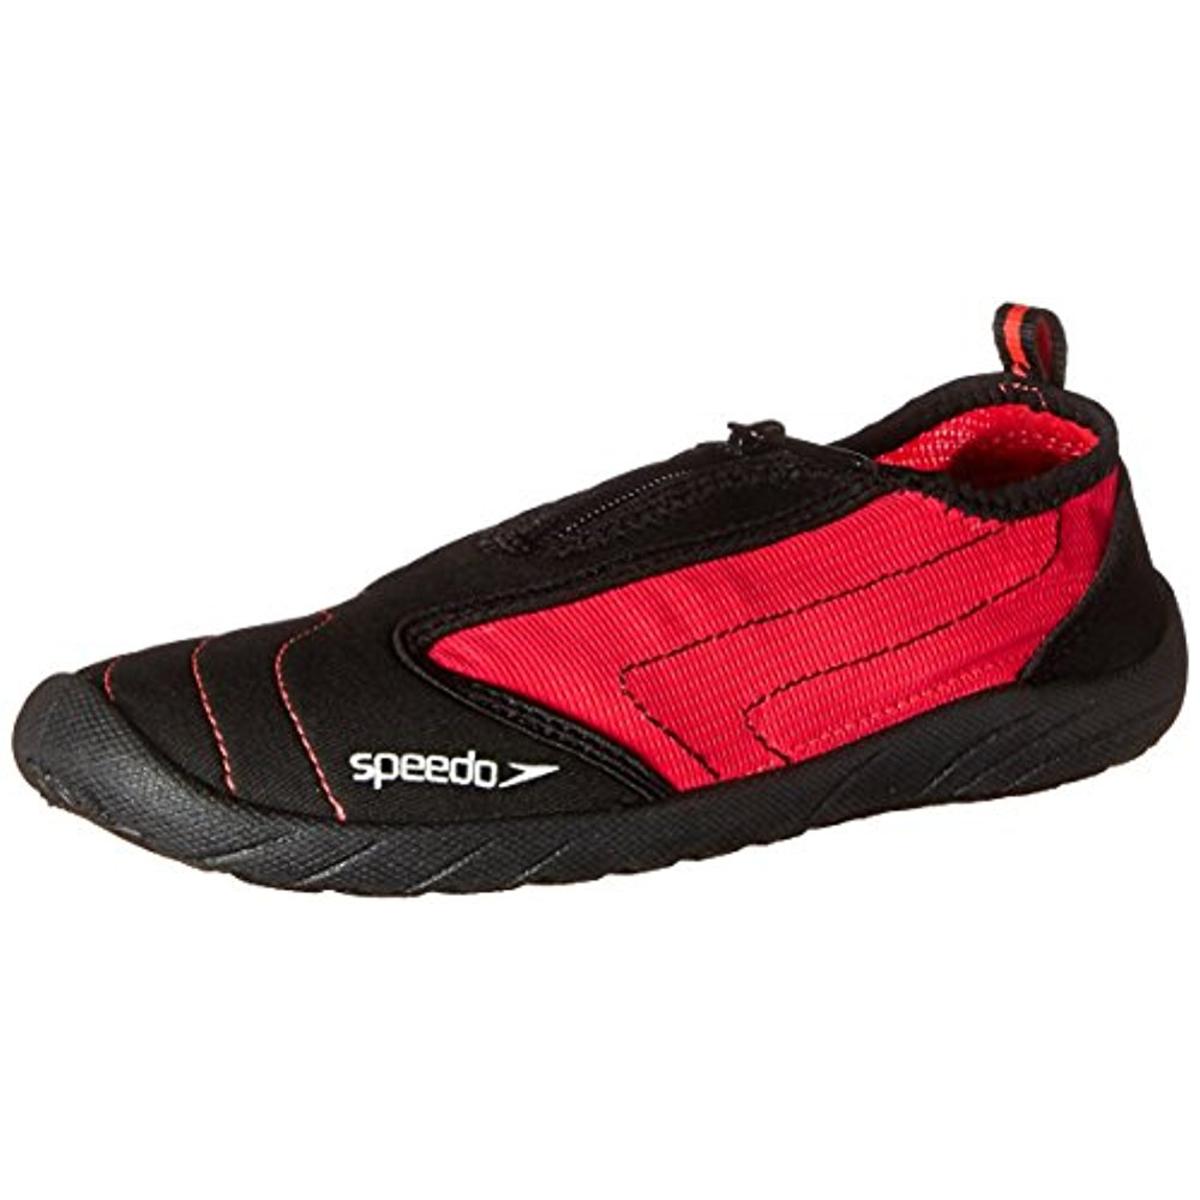 Speedo 1671 Womens Zipwalker 4.0 Mesh Breathable Water Shoes BHFO | eBay